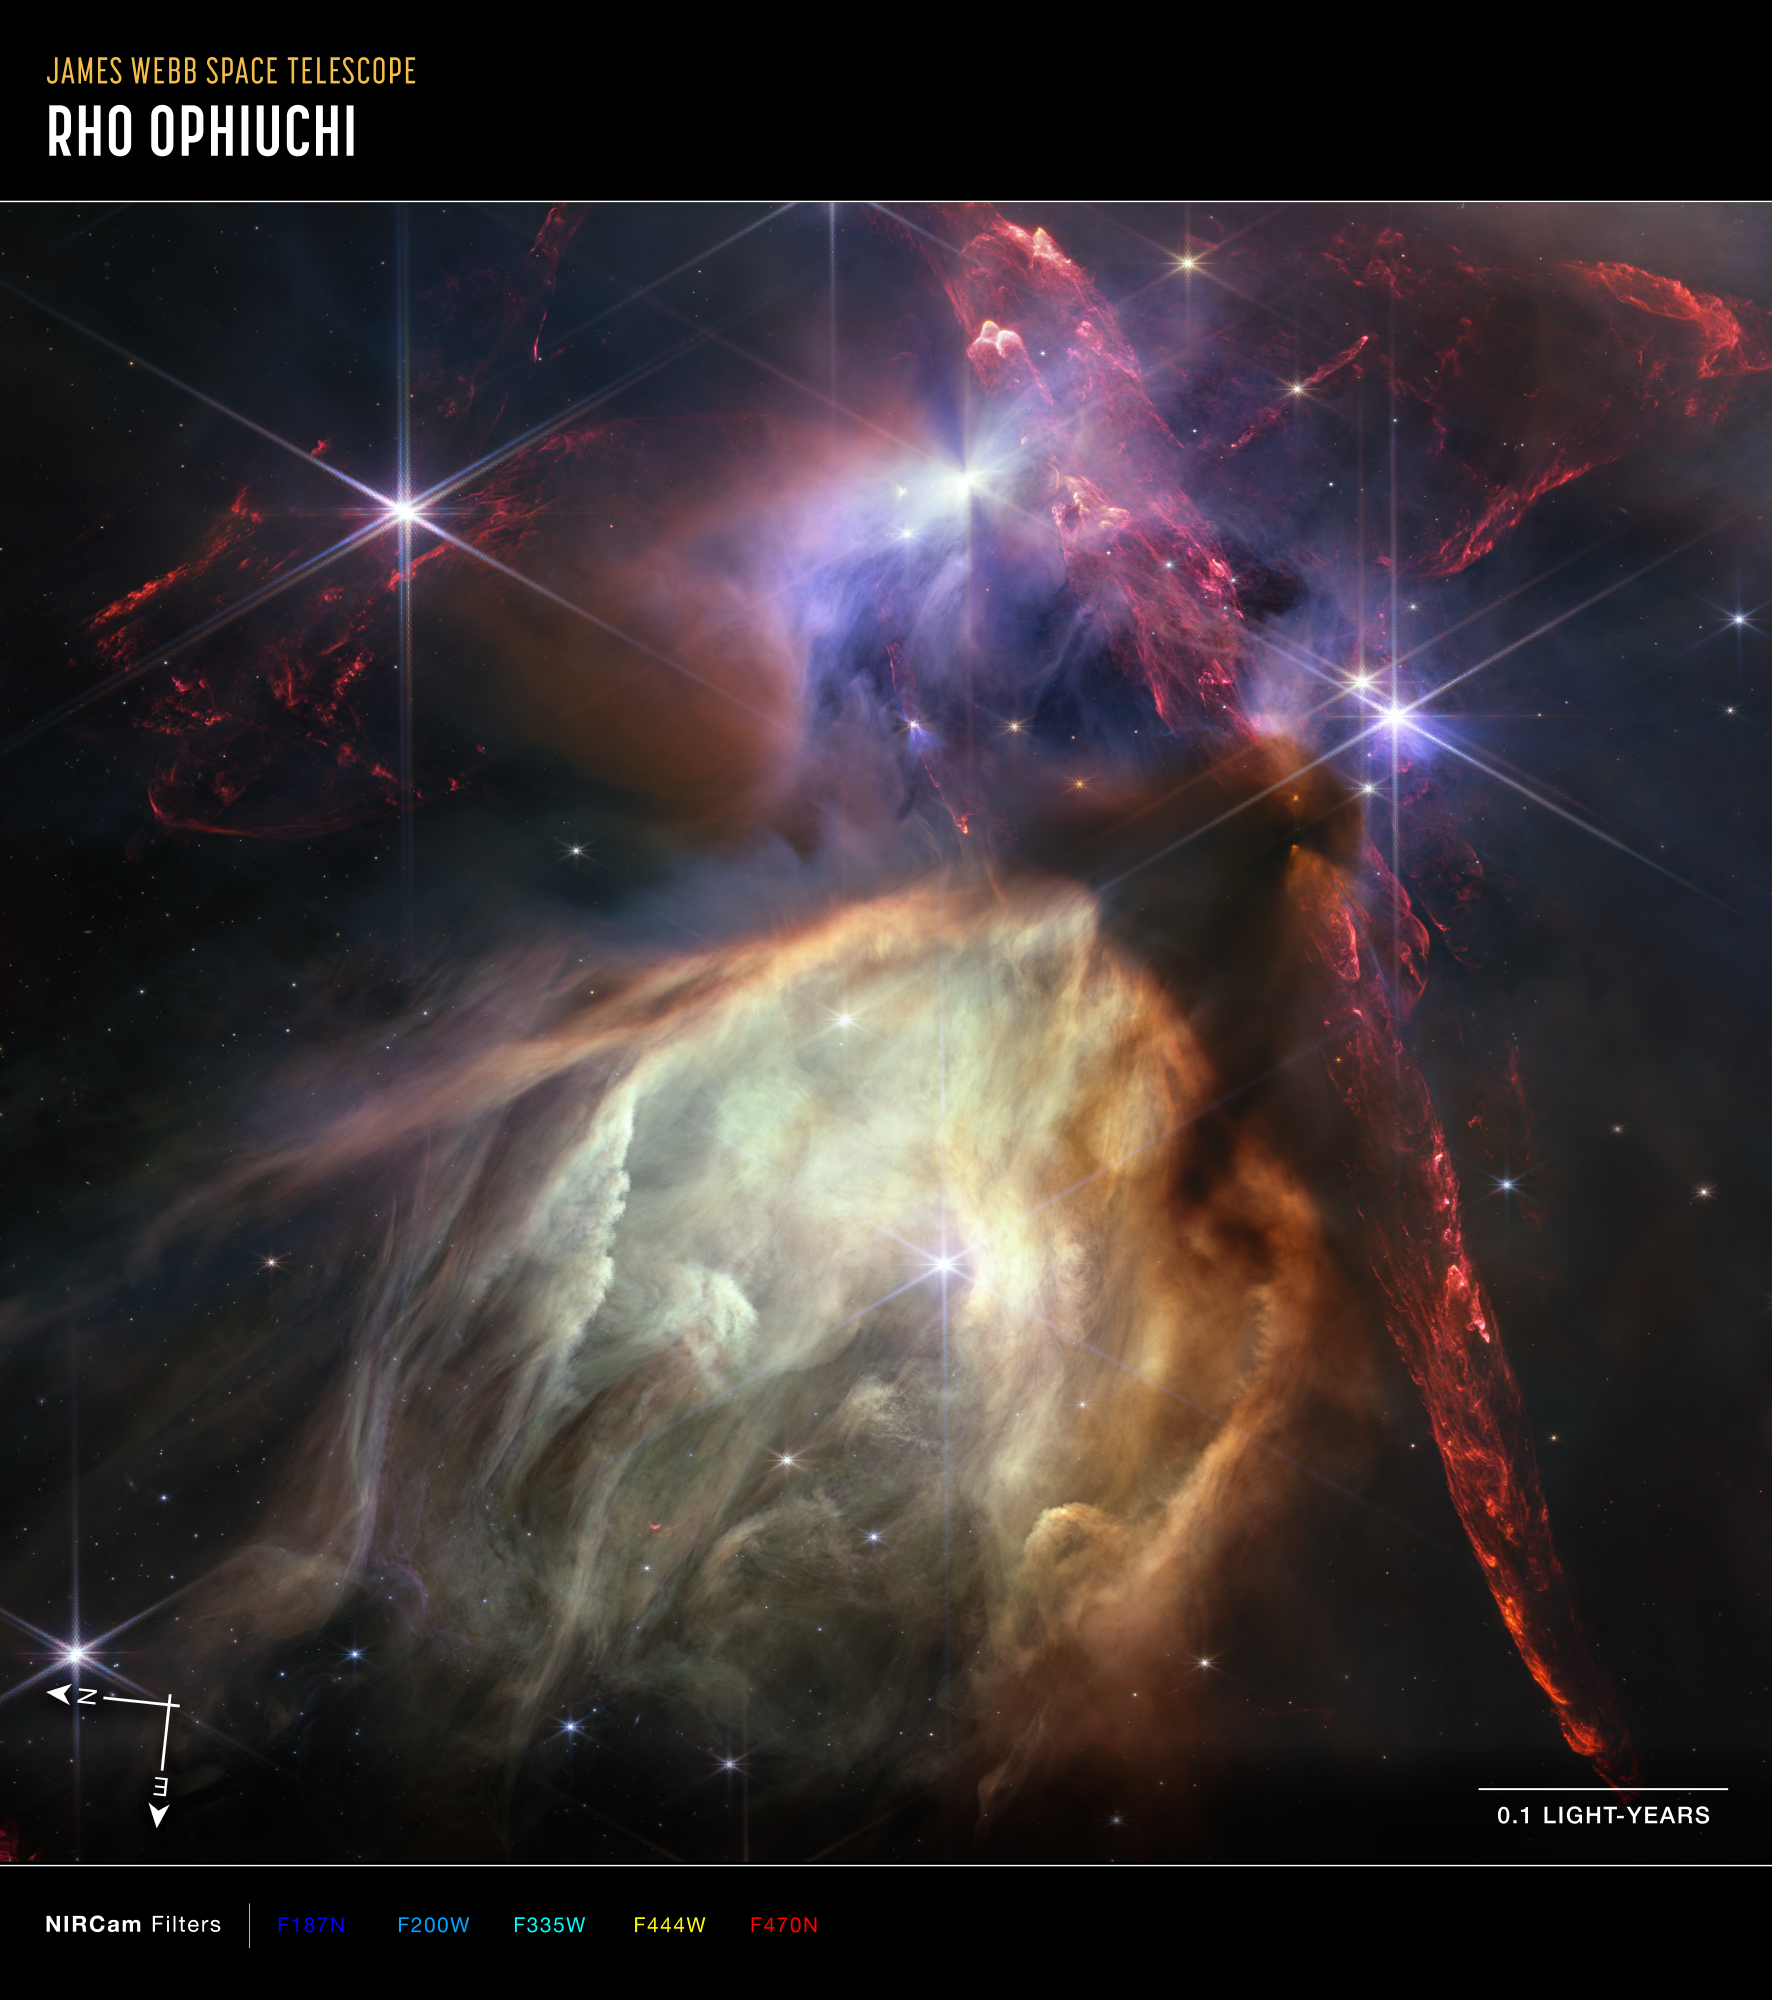 Na ilustracji: Zdjęcie wykonane Teleskopem Webba obszaru powstawania gwiazd w Mgławicy Ro Ophiuchi ze strzałkami N-E pokazującymi kierunki na niebie, skalą odległości 0,1 l.św. i mapowaniem kolorów. Mapowanie kolorów informuje jakie filtry zostały użyte do obserwacji z kamerą NIRCam w bliskiej podczerwieni (niebieski → 1,87μm, jasnoniebieski → 2,00μm, niebieskozielony → 3,35μm, żółty → 4,44μm i czerwony → 4,70μm). Zdjęcie po przekątnej odpowiada na niebie 6,4’ lub 0,7 l.św. przy odległości do obiektu około 390 l.św. Materiał obserwacyjny był zbierany przez Teleskop Webba na początku marca i kwietnia br. Mgławica Ro Ophiuchi jest najbliższym Ziemi, względnie niewielkim i spokojnym gwiezdnym żłobkiem, czyli obszarem gwiazdotwórczym. Dżety w kolorze czerwonym, wychodzące z młodych gwiazd przecinają ten widok i zderzają się z otaczającym gazem międzygwiazdowym, wywołując świecenie molekularnego wodoru. Wokół niektórych gwiazd na tym zdjęciu widać charakterystyczne cienie dysków protoplanetarnych, z których w przyszłości powstaną układy planetarne. Młode gwiazdy z tymi dyskami posiadają masy porównywalne ze Słońcem lub mniejsze. Najbardziej masywna gwiazda na tym zdjęciu została oznaczona przez astronomów S1 i znajduje się w dolnej jego połowie w oświetlonej pustce, którą kształtuje jej wiatr gwiazdowy. Otaczający S1 gaz w jaśniejszych barwach składa się z  wielopierścieniowych węglowodorów aromatycznych (ang. PAH – skrót od polycyclic aromatic hydrocarbons) – molekuł zbudowanych między innymi z węgla, które są jednymi z najczęściej występujących związków w przestrzeni kosmicznej. Źródło: NASA, ESA, CSA, STScI, Klaus Pontoppidan (STScI)